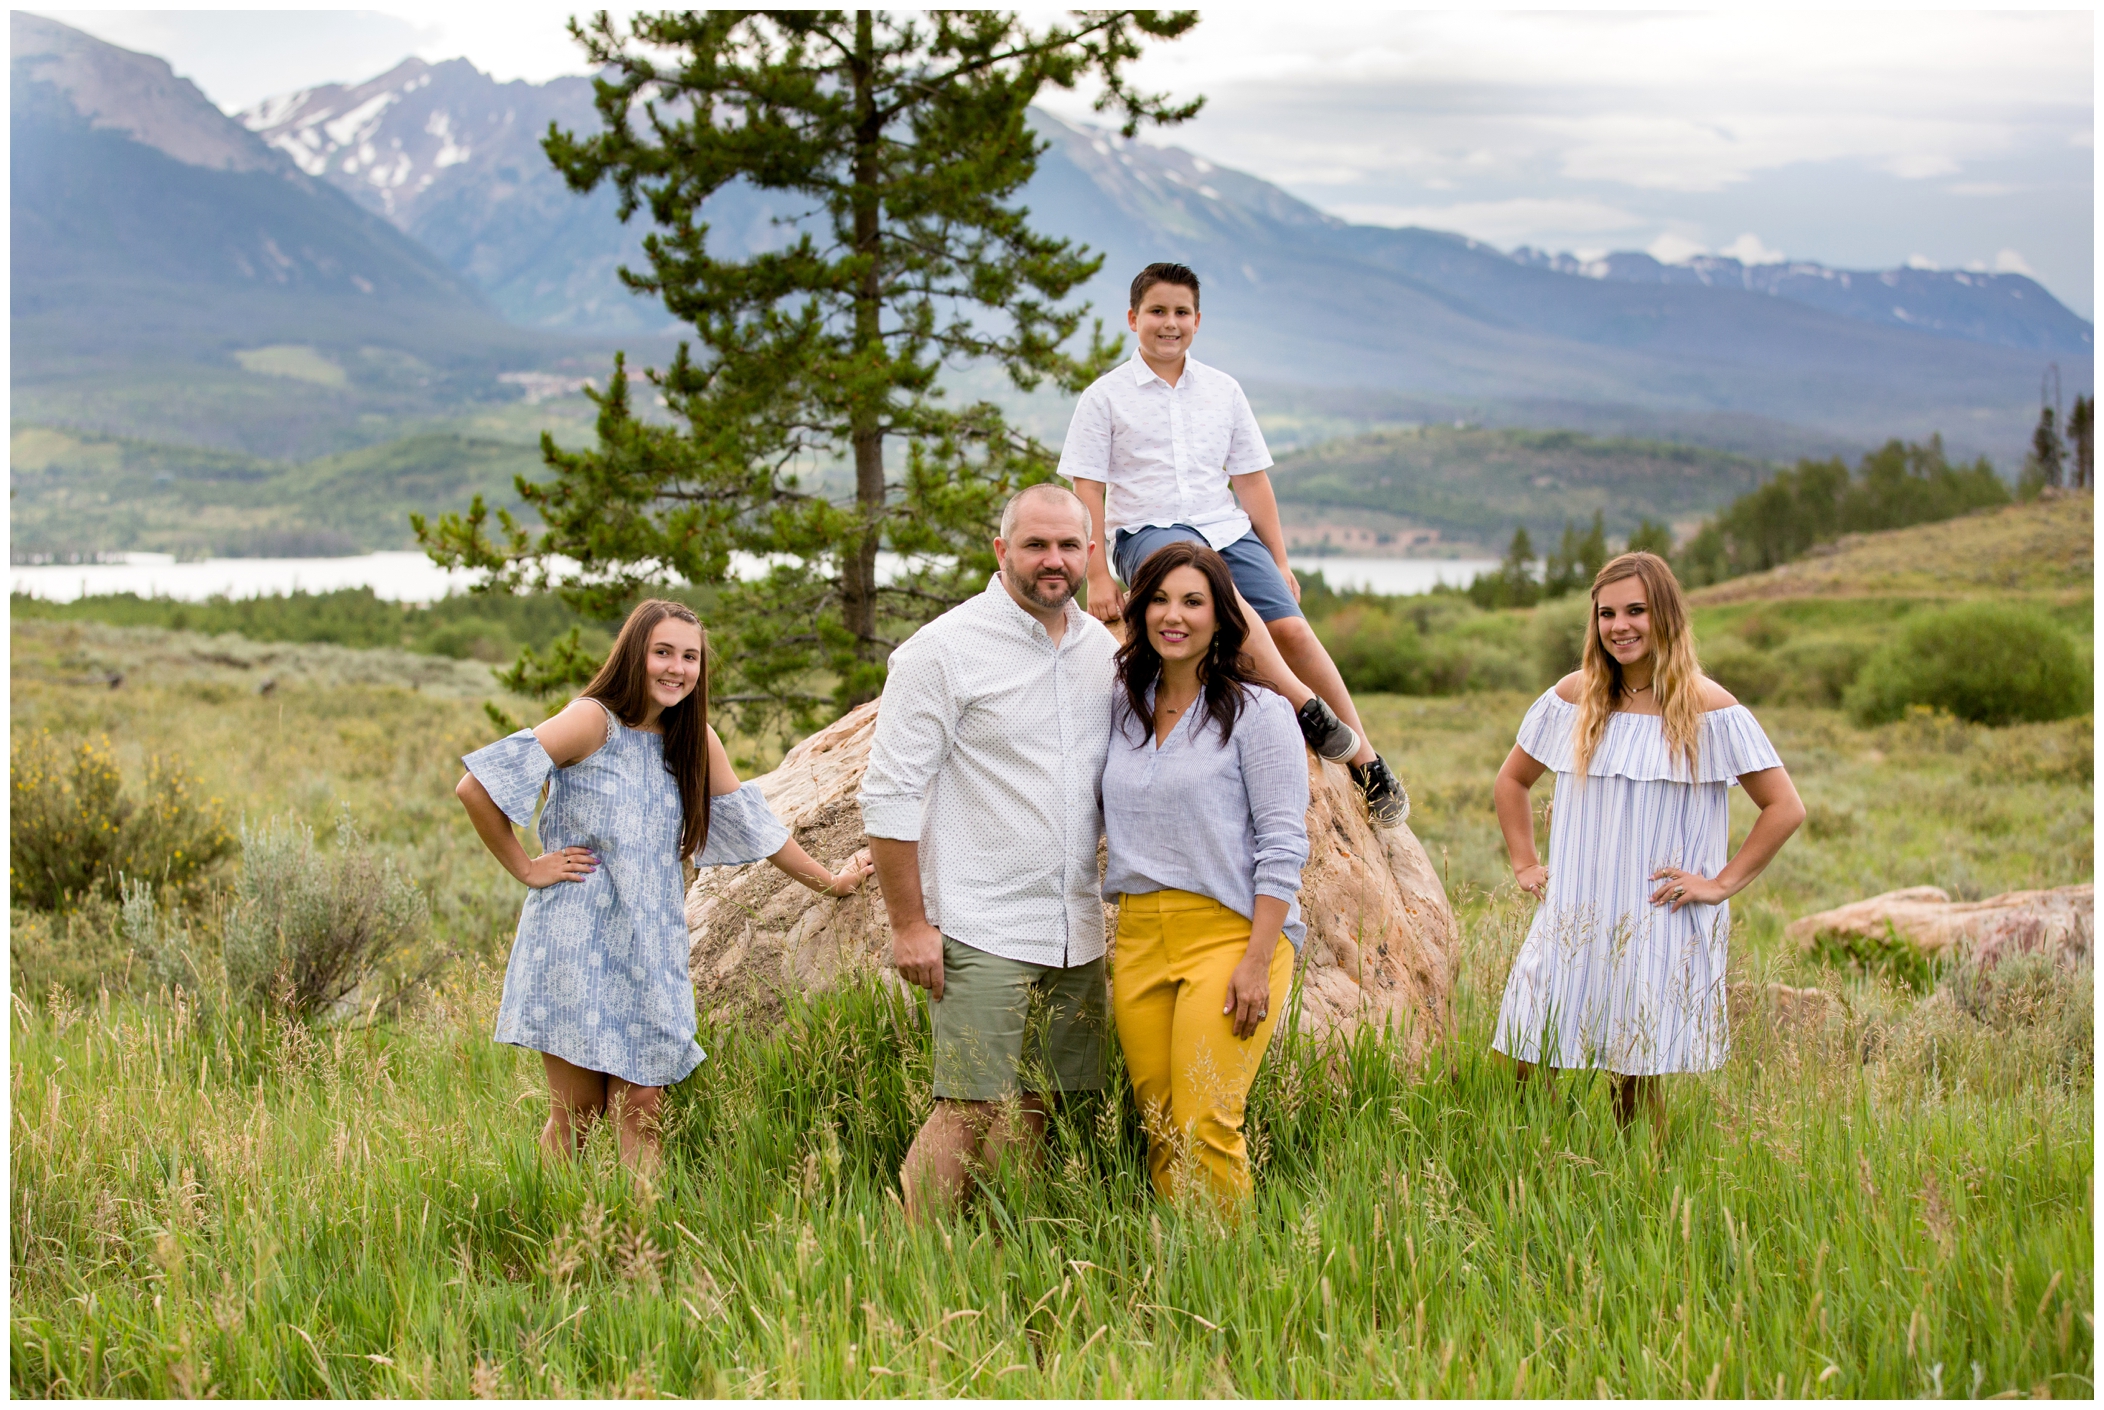 Breckenridge family photographs at Lake Dillon Colorado 